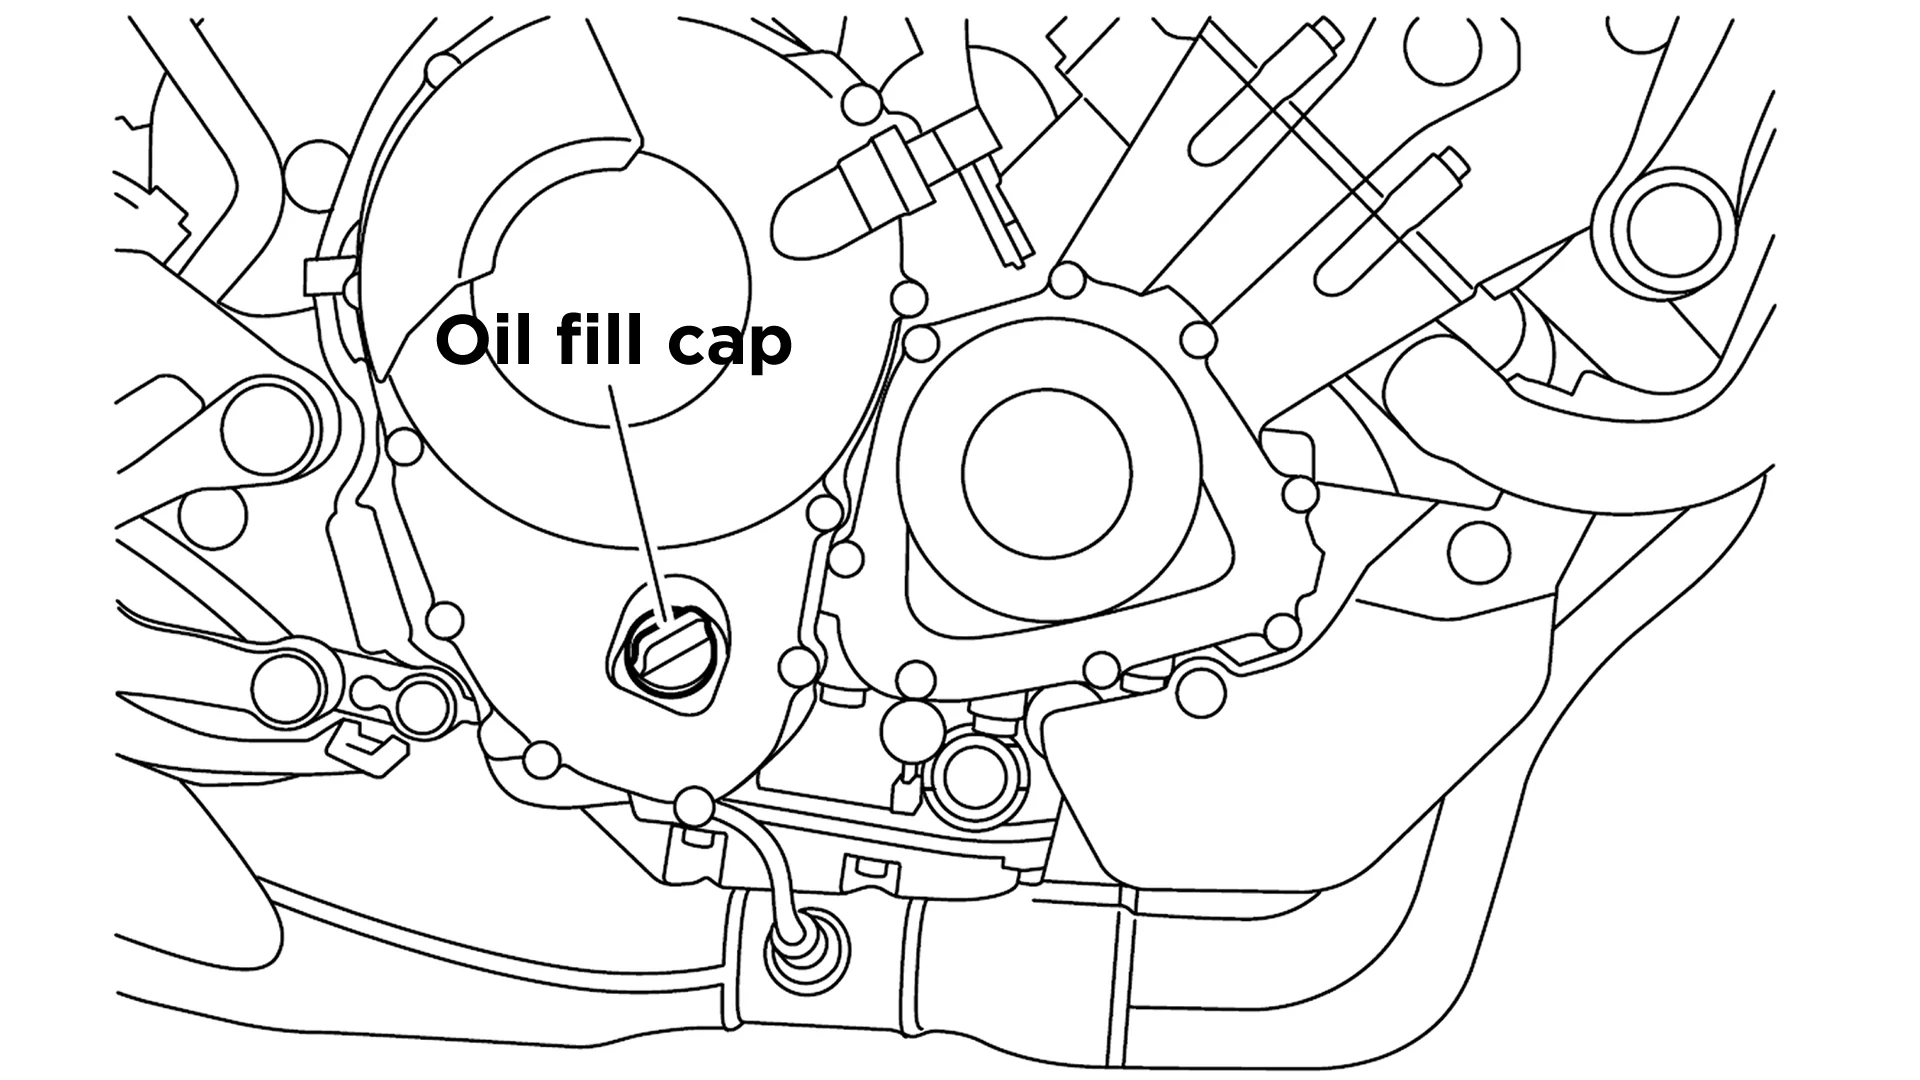 Step 1) Remove the oil fill cap